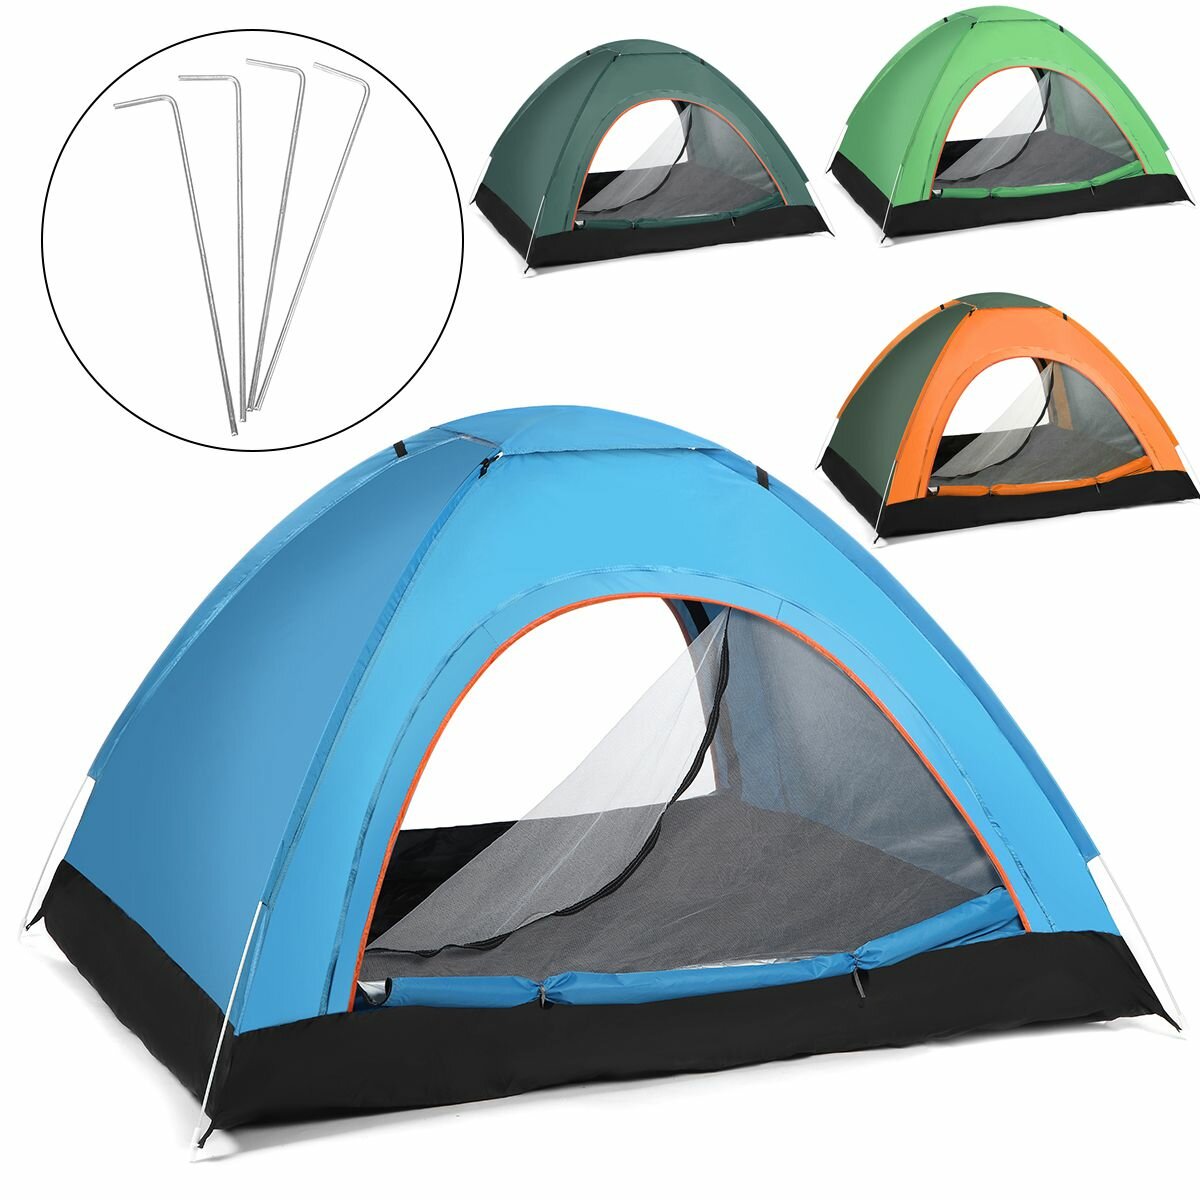 Teljesen automatikus anti-UV szél- és vízálló kemping sátor 2-3 személy számára kültéri utazáshoz, túrázáshoz és strandhoz.